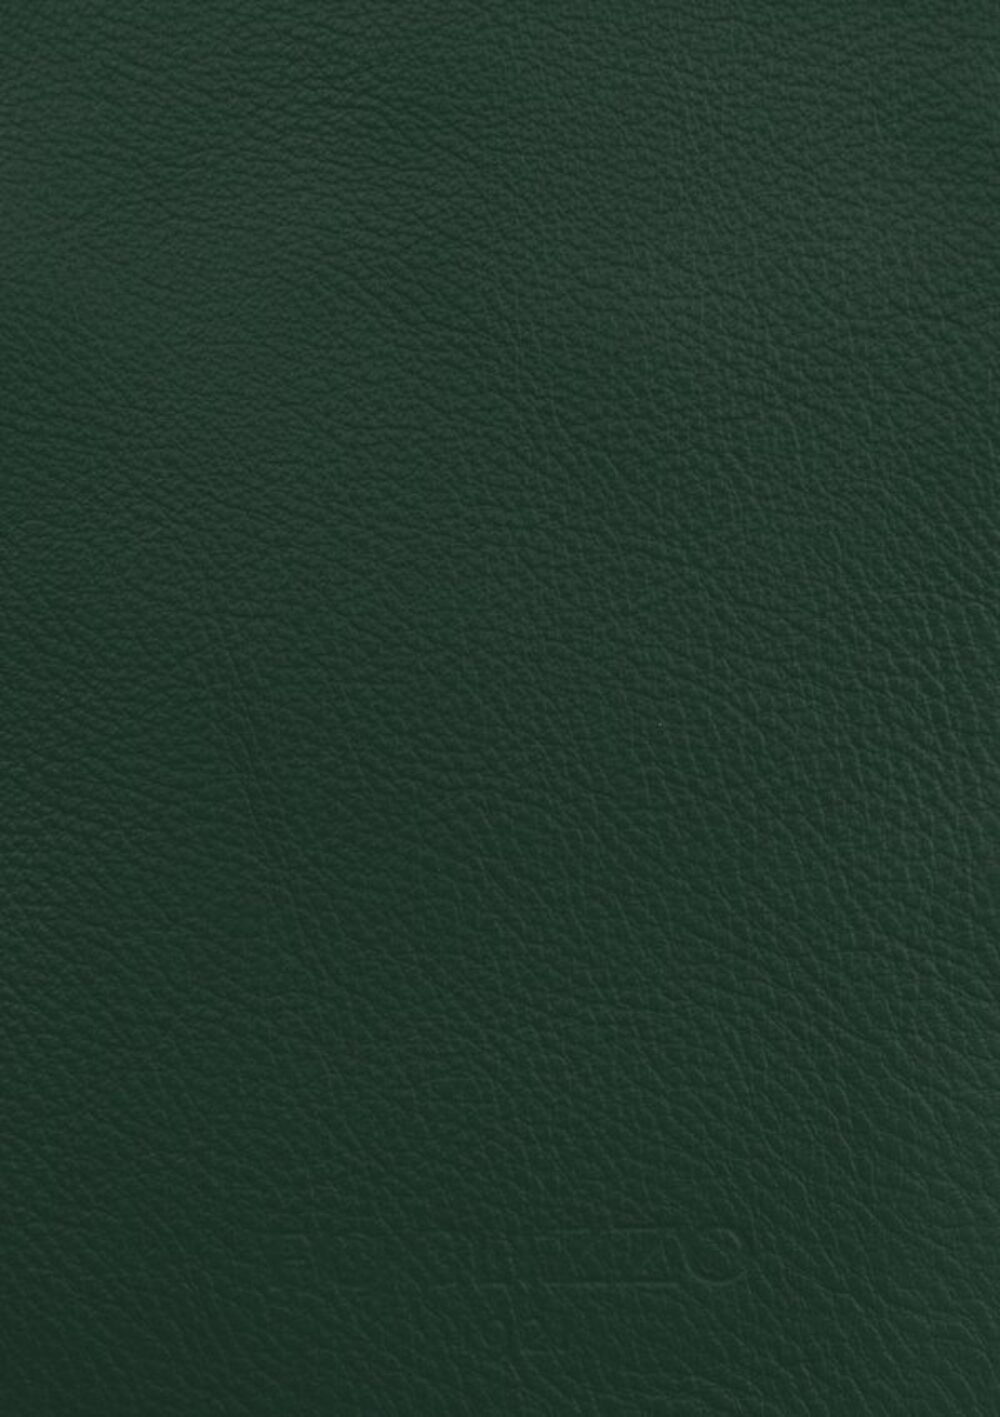 Diseño de lujo y alfombras de alta gama hechas a medida • Quatrefoil Green Jade